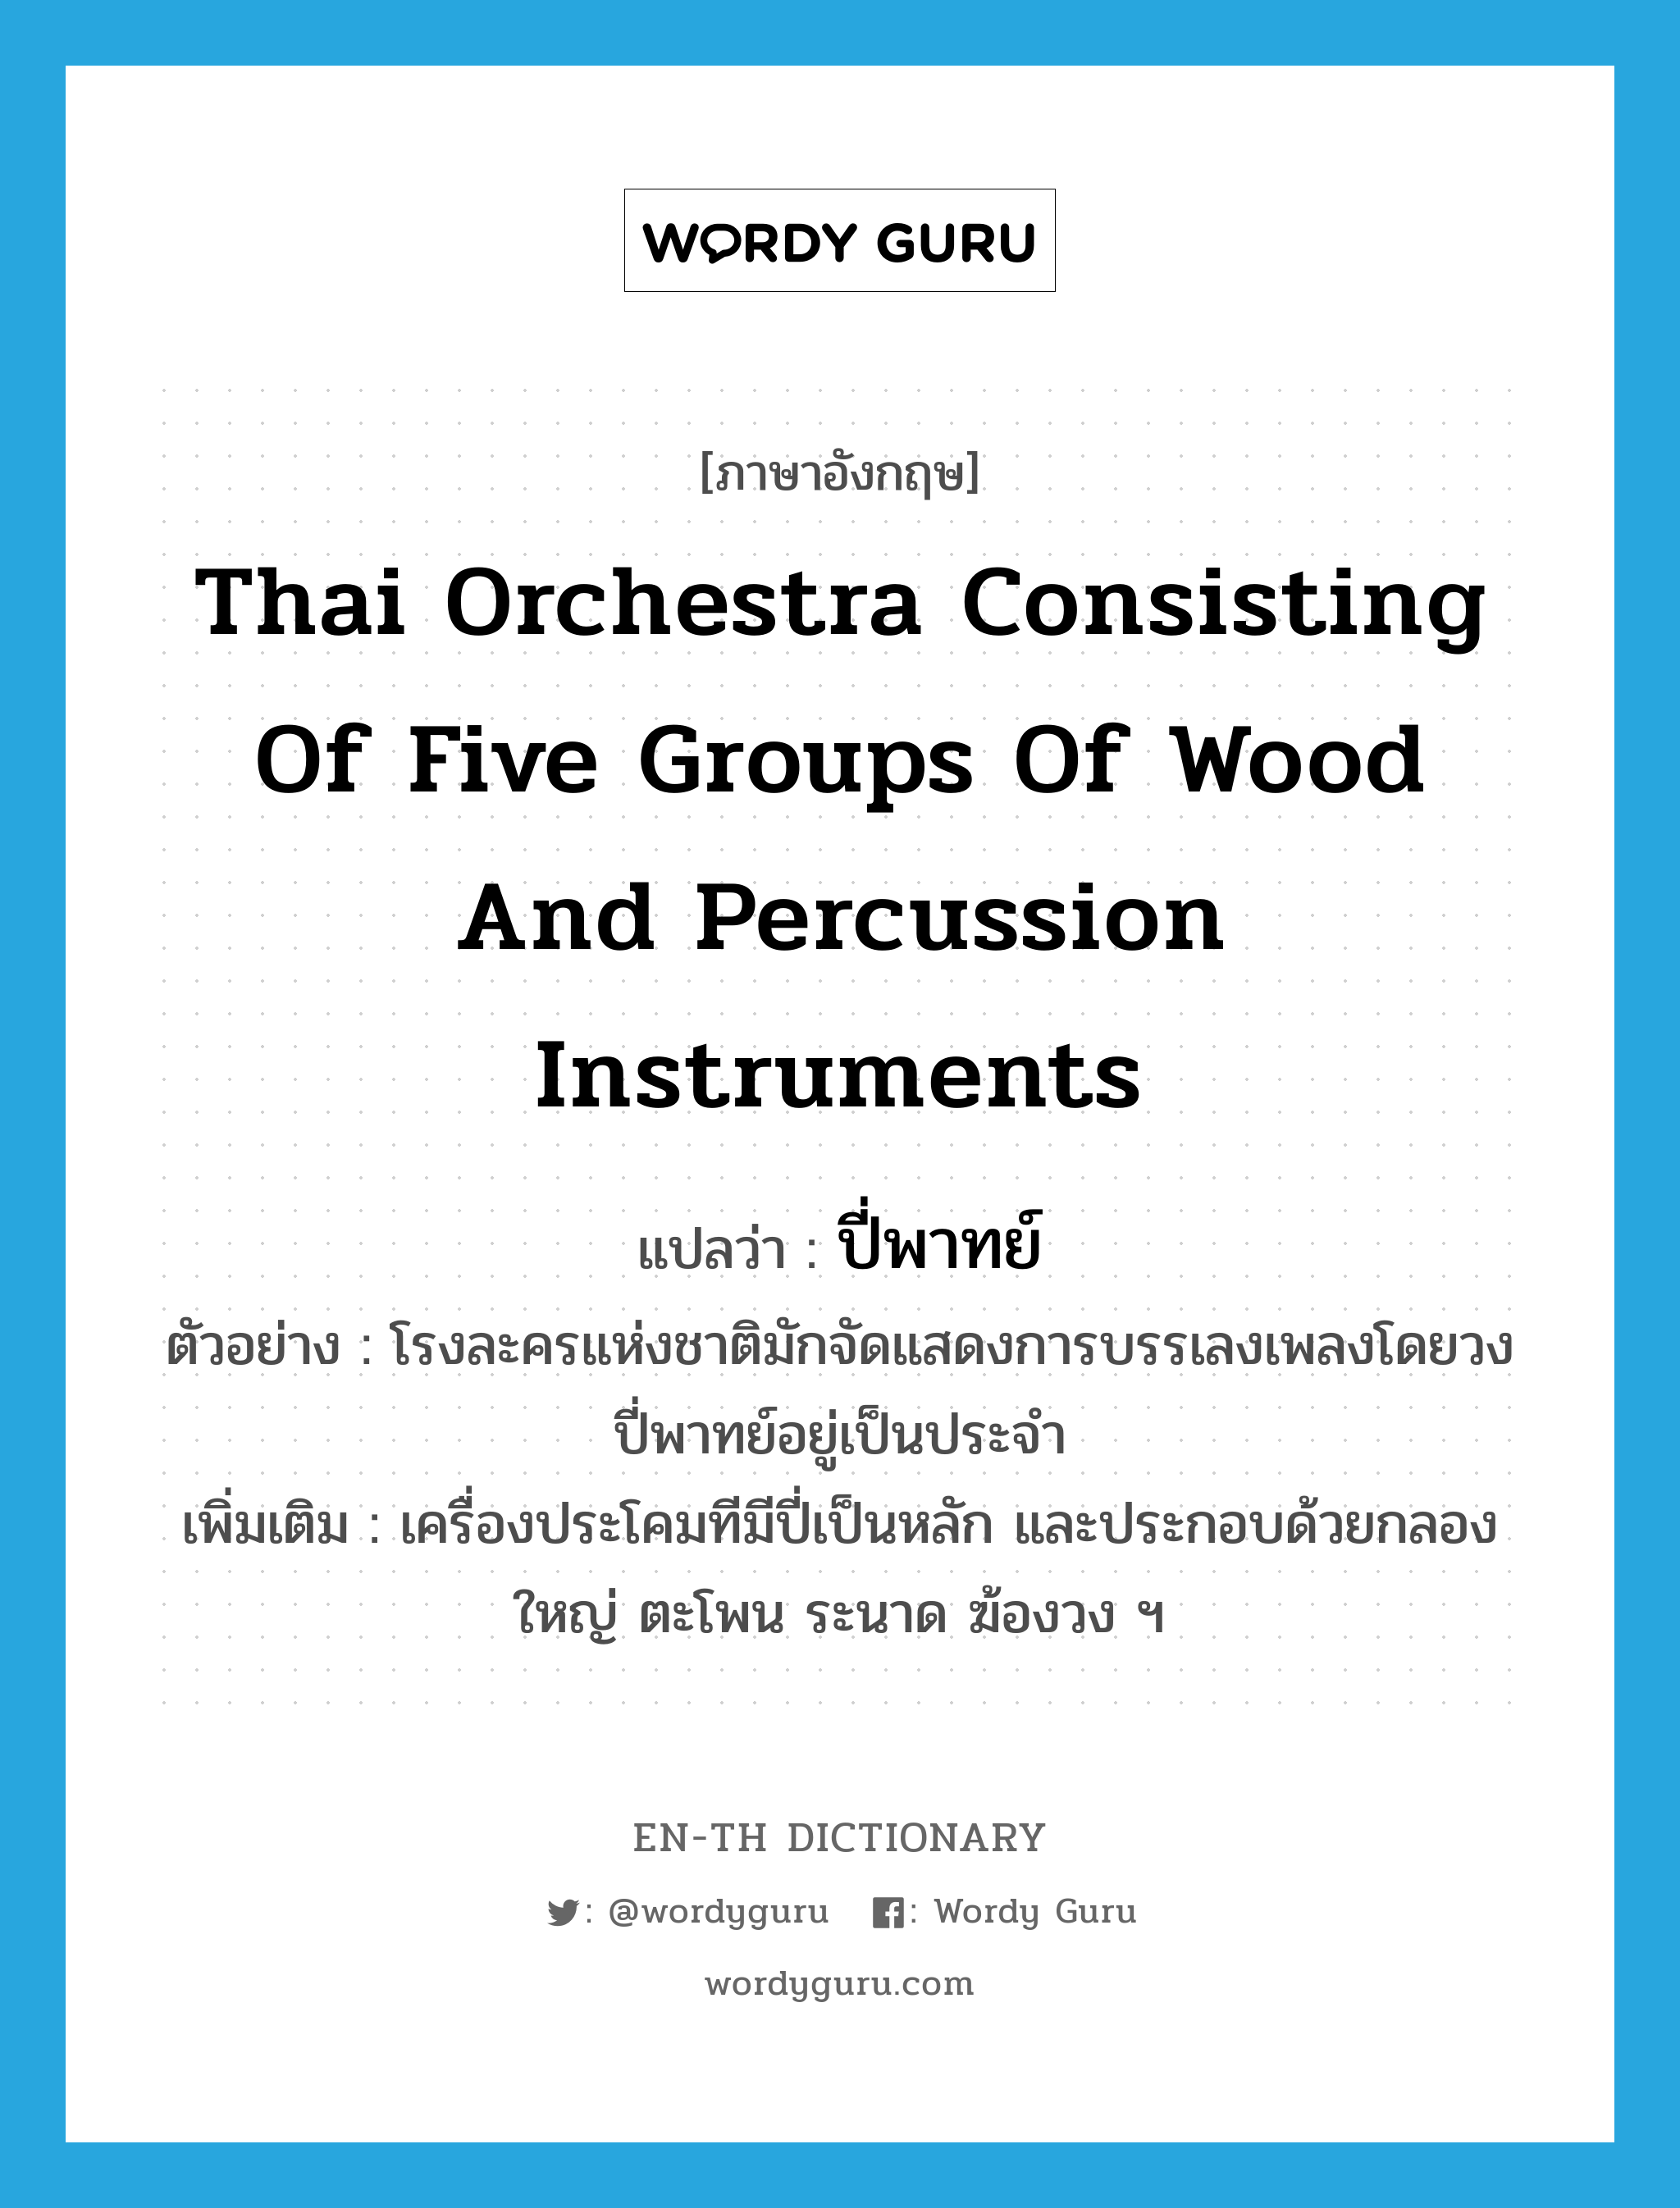 Thai orchestra consisting of five groups of wood and percussion instruments แปลว่า?, คำศัพท์ภาษาอังกฤษ Thai orchestra consisting of five groups of wood and percussion instruments แปลว่า ปี่พาทย์ ประเภท N ตัวอย่าง โรงละครแห่งชาติมักจัดแสดงการบรรเลงเพลงโดยวงปี่พาทย์อยู่เป็นประจำ เพิ่มเติม เครื่องประโคมทีมีปี่เป็นหลัก และประกอบด้วยกลองใหญ่ ตะโพน ระนาด ฆ้องวง ฯ หมวด N